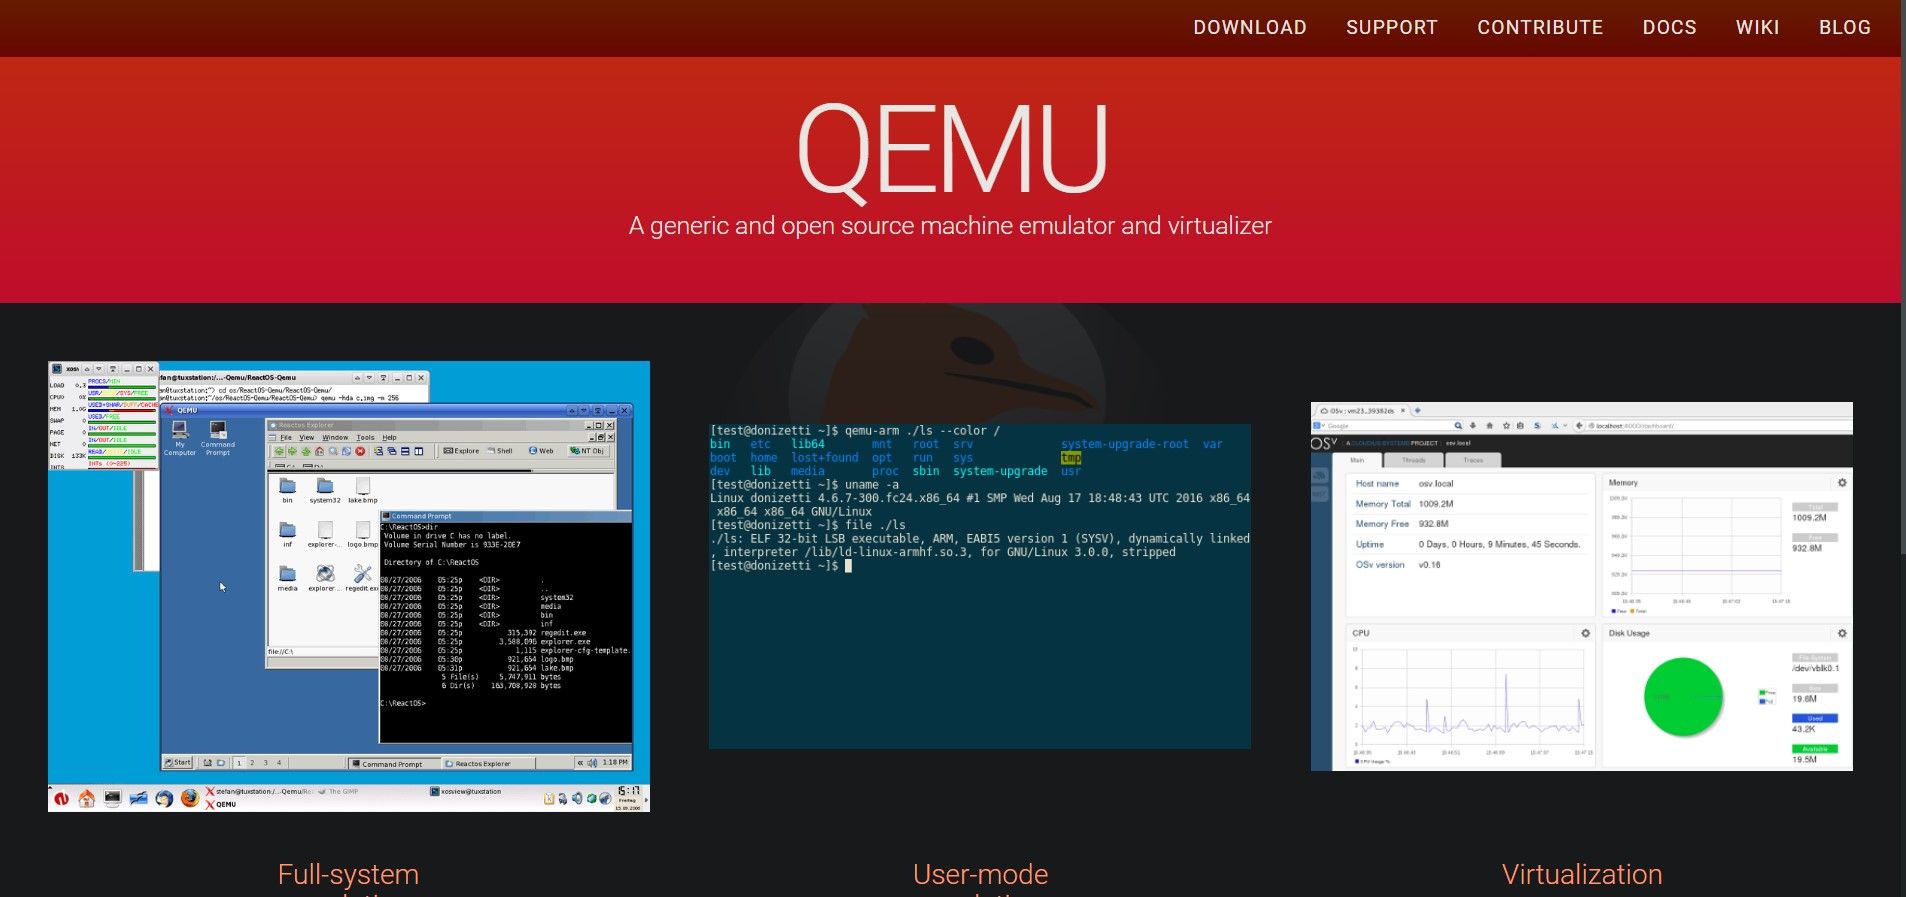 سایت رسمی QEMU